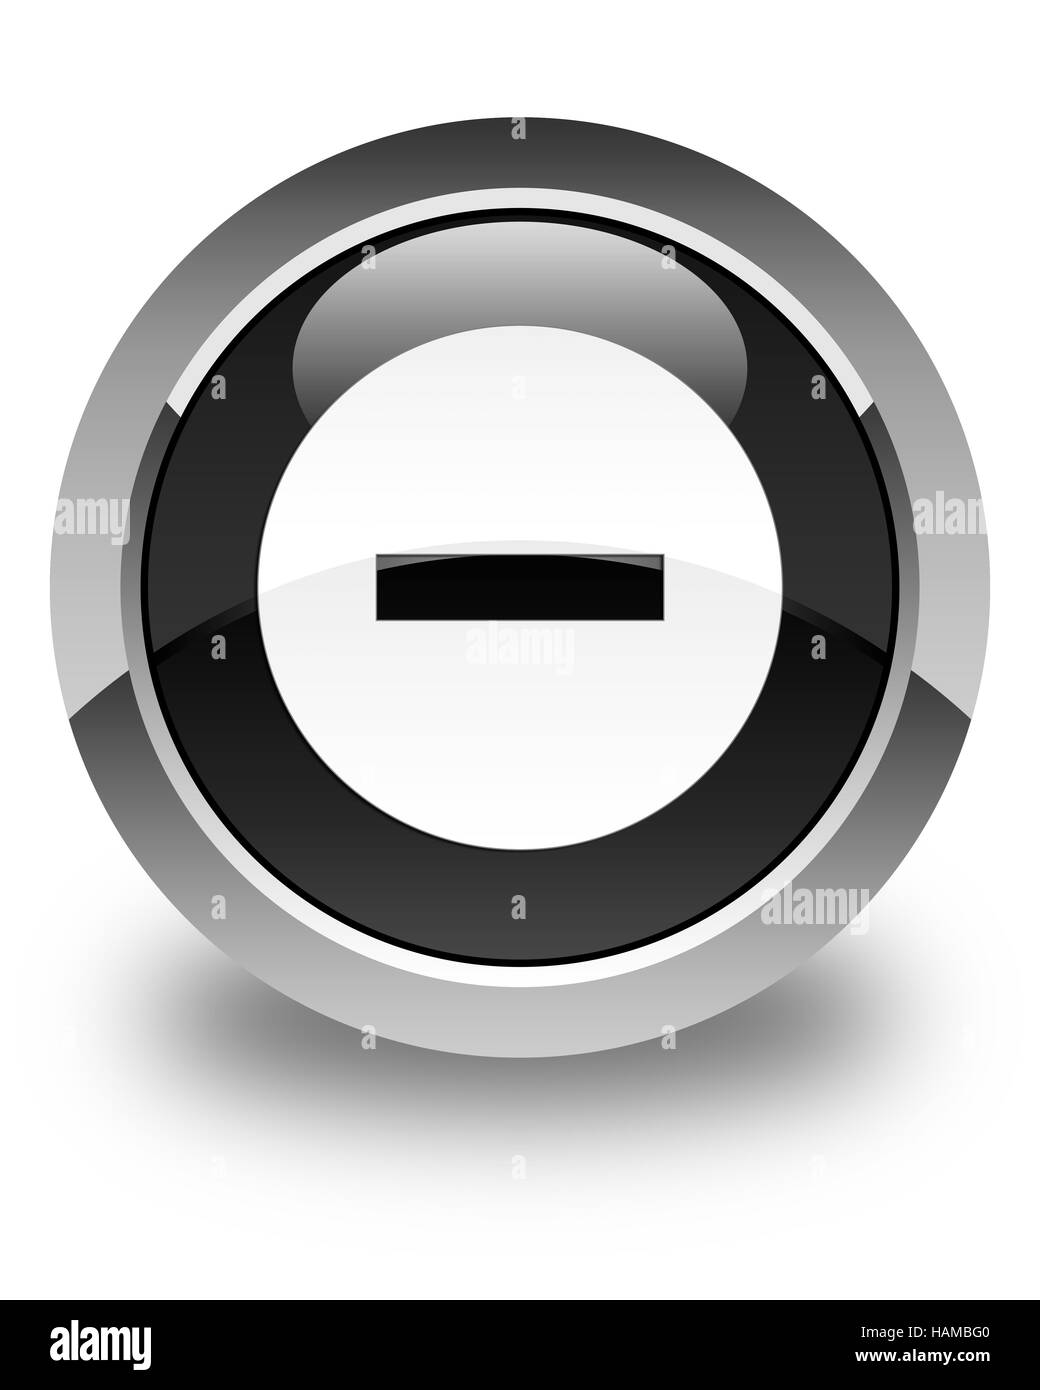 Icône Annuler isolé sur bouton rond noir brillant abstract illustration Banque D'Images